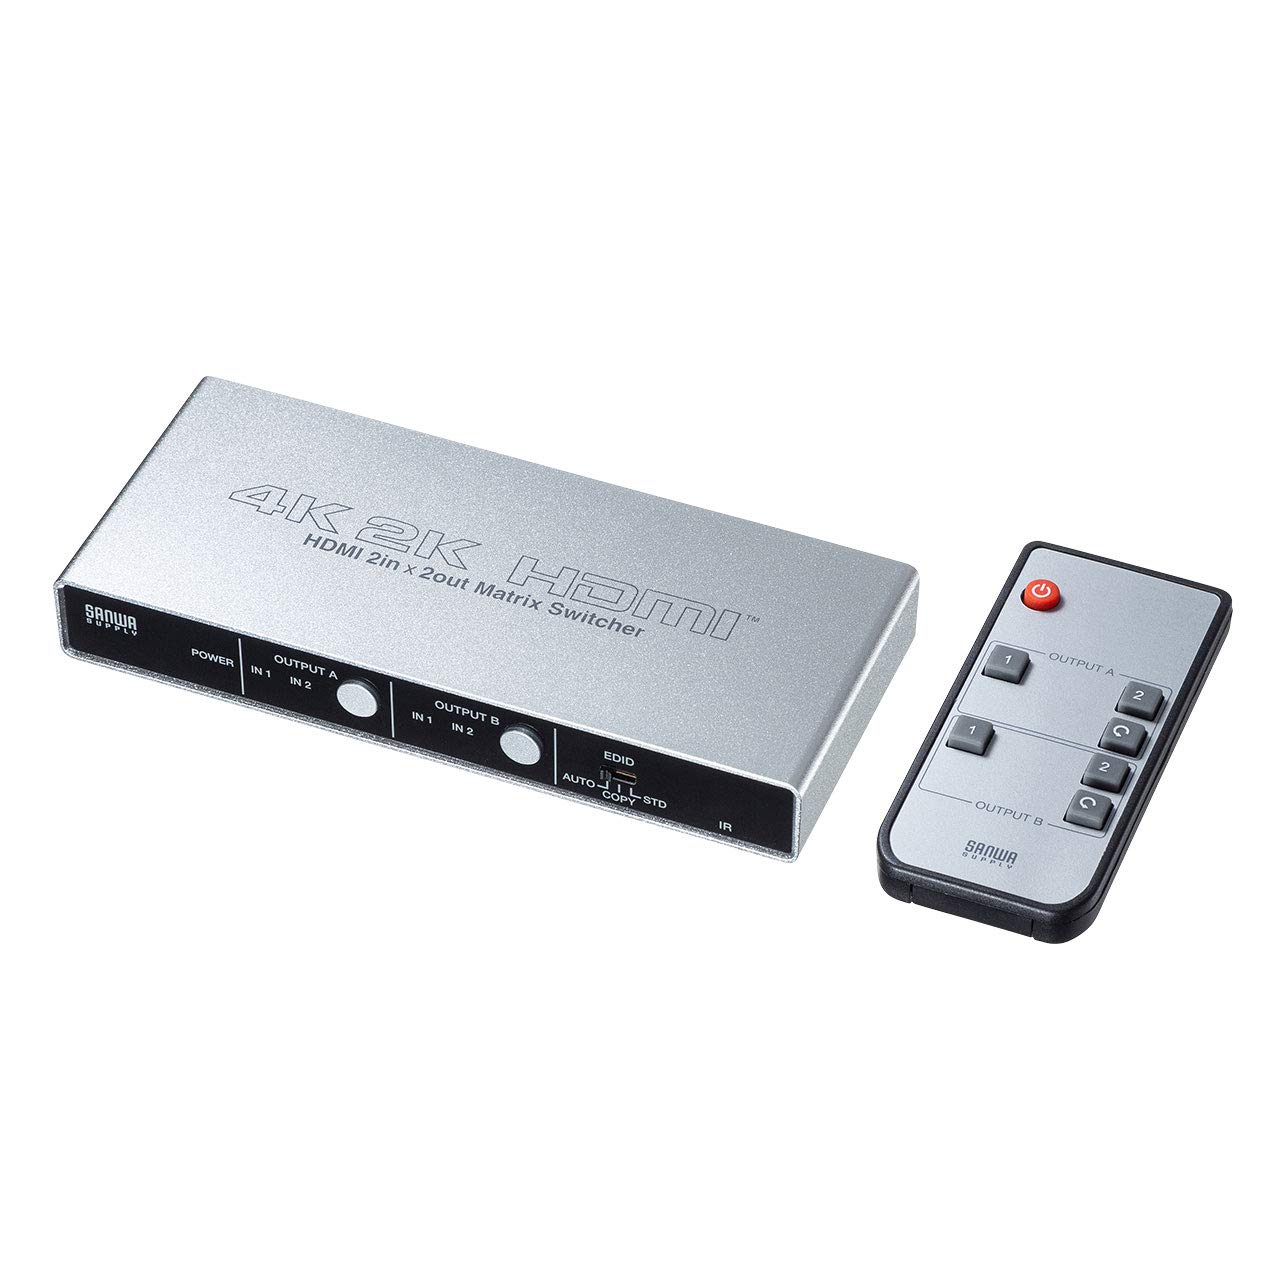 サンワサプライ HDMI切替器(2入力2出力) マトリックス切替機能付き 4K(60Hz、4:2:0)対応 SW-UHD22